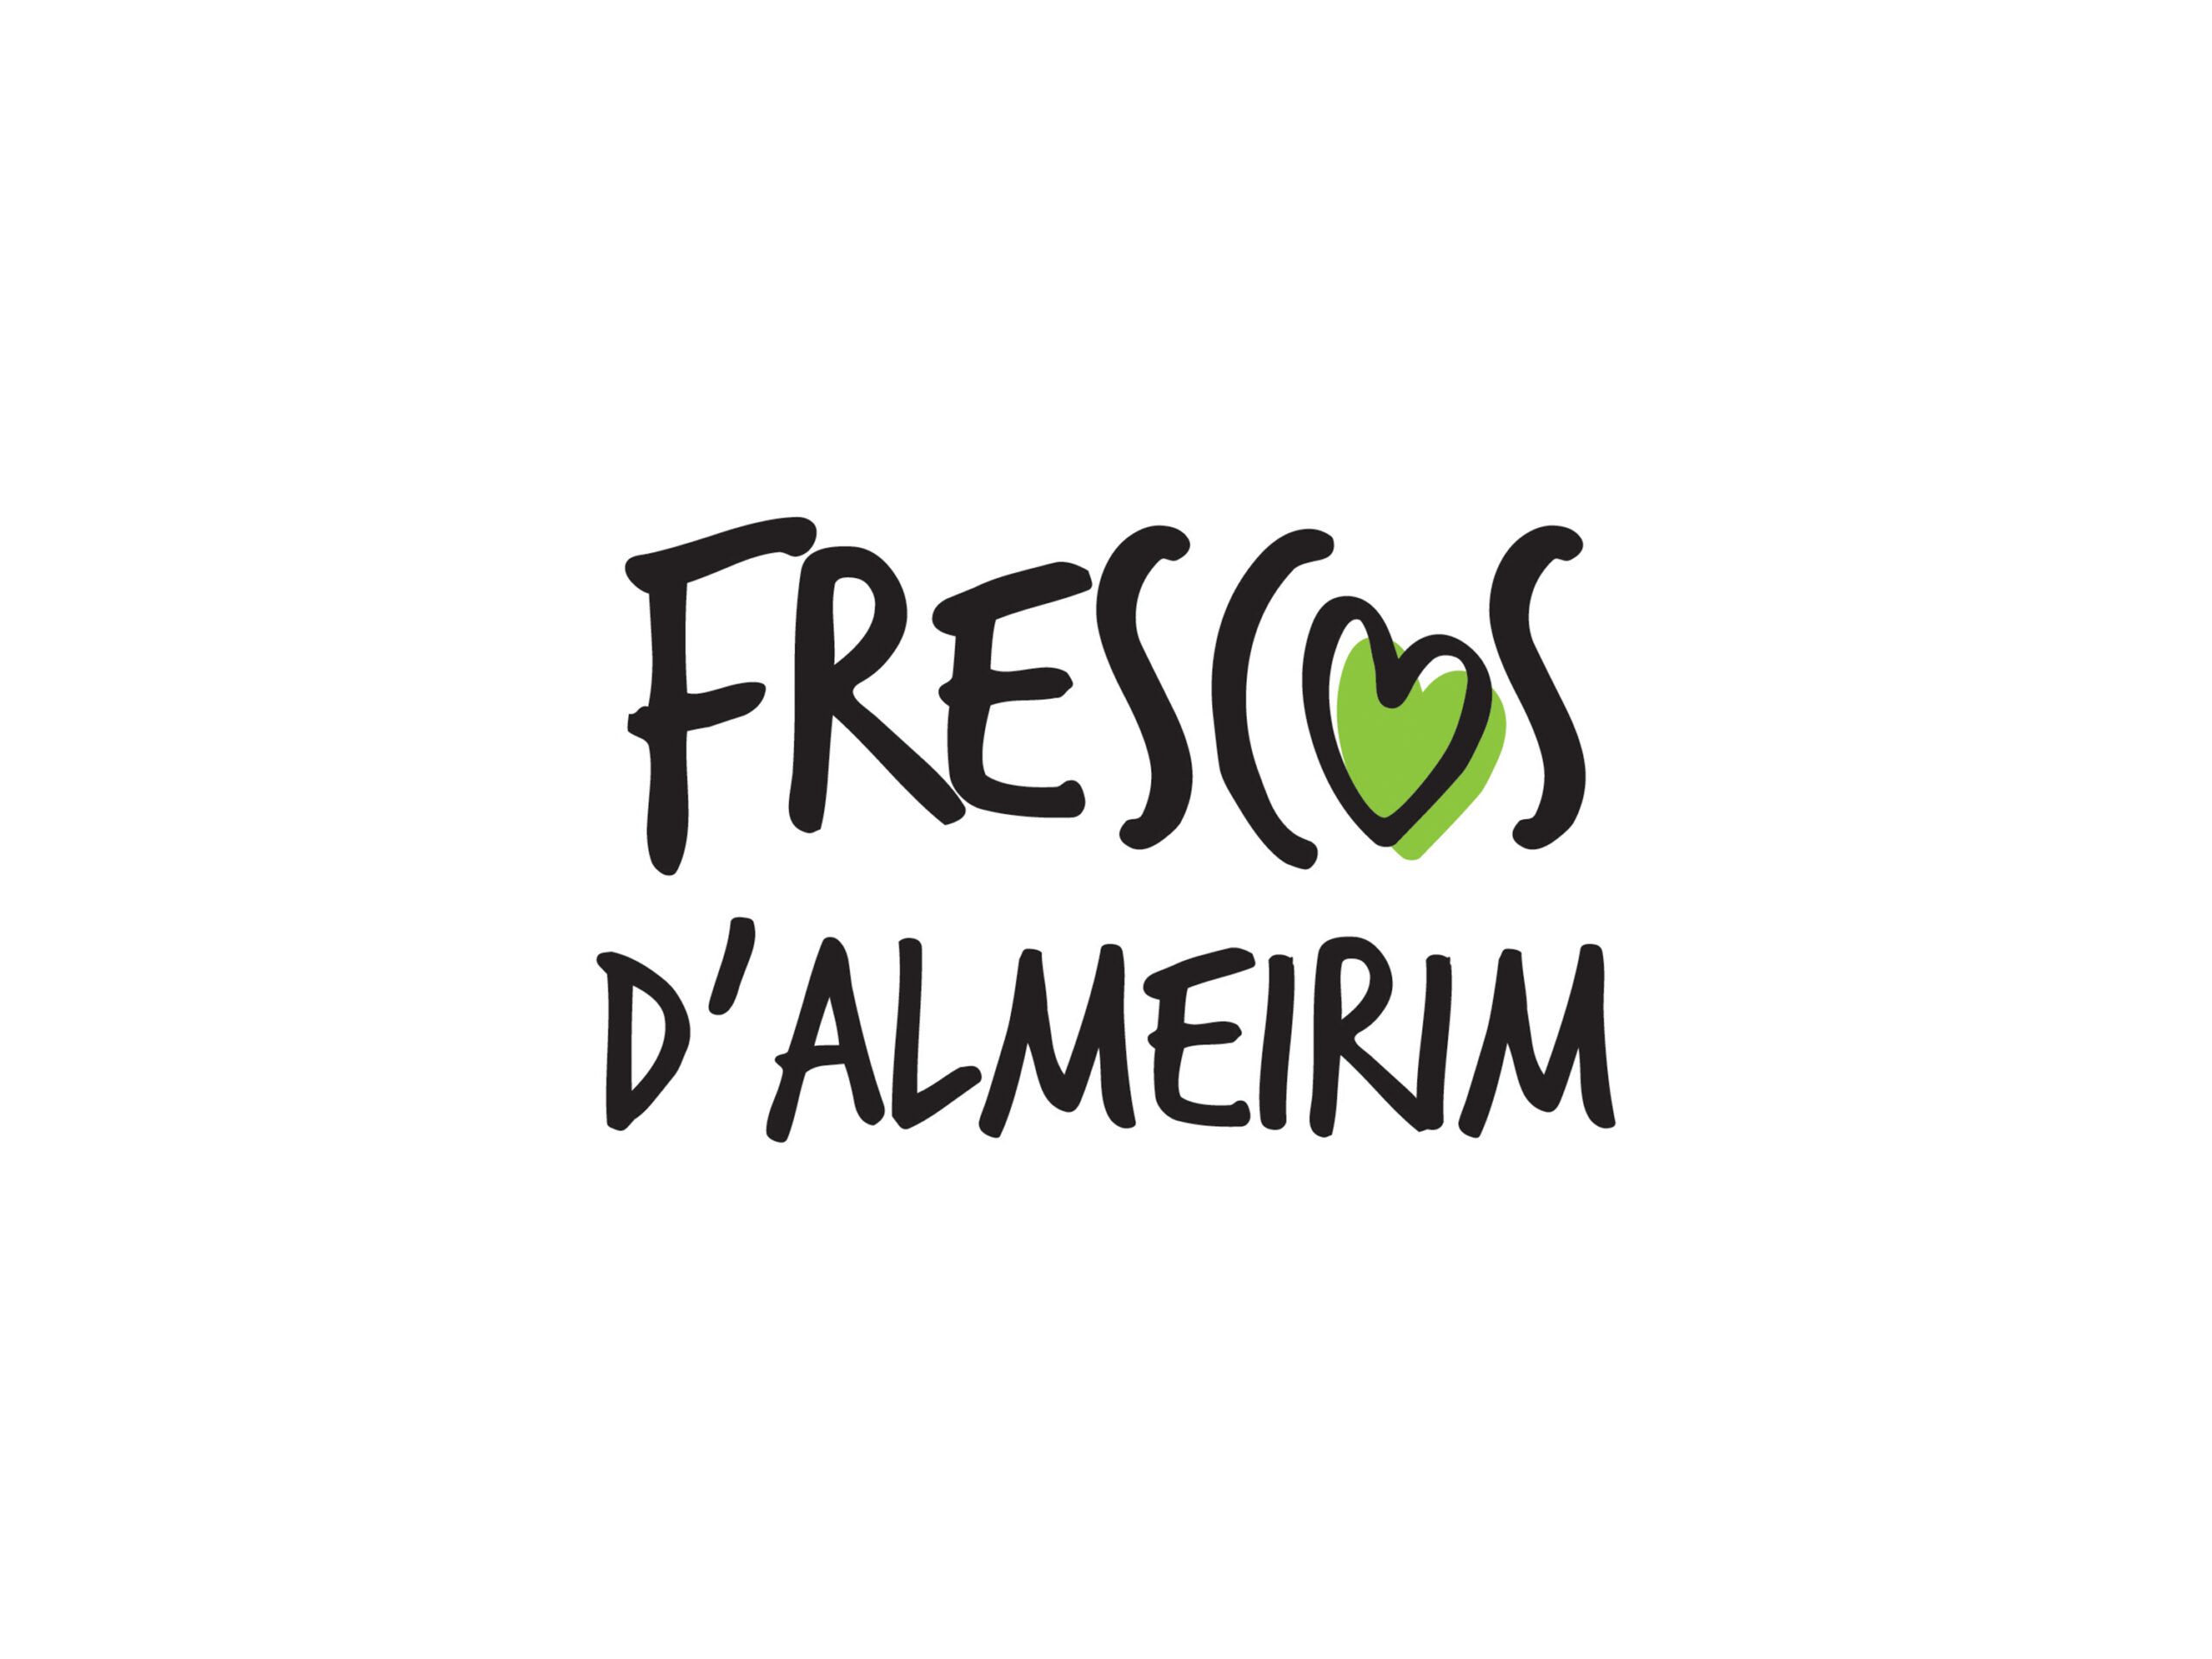 Hicom Frescos Dalmeirim Logotipo Scaled